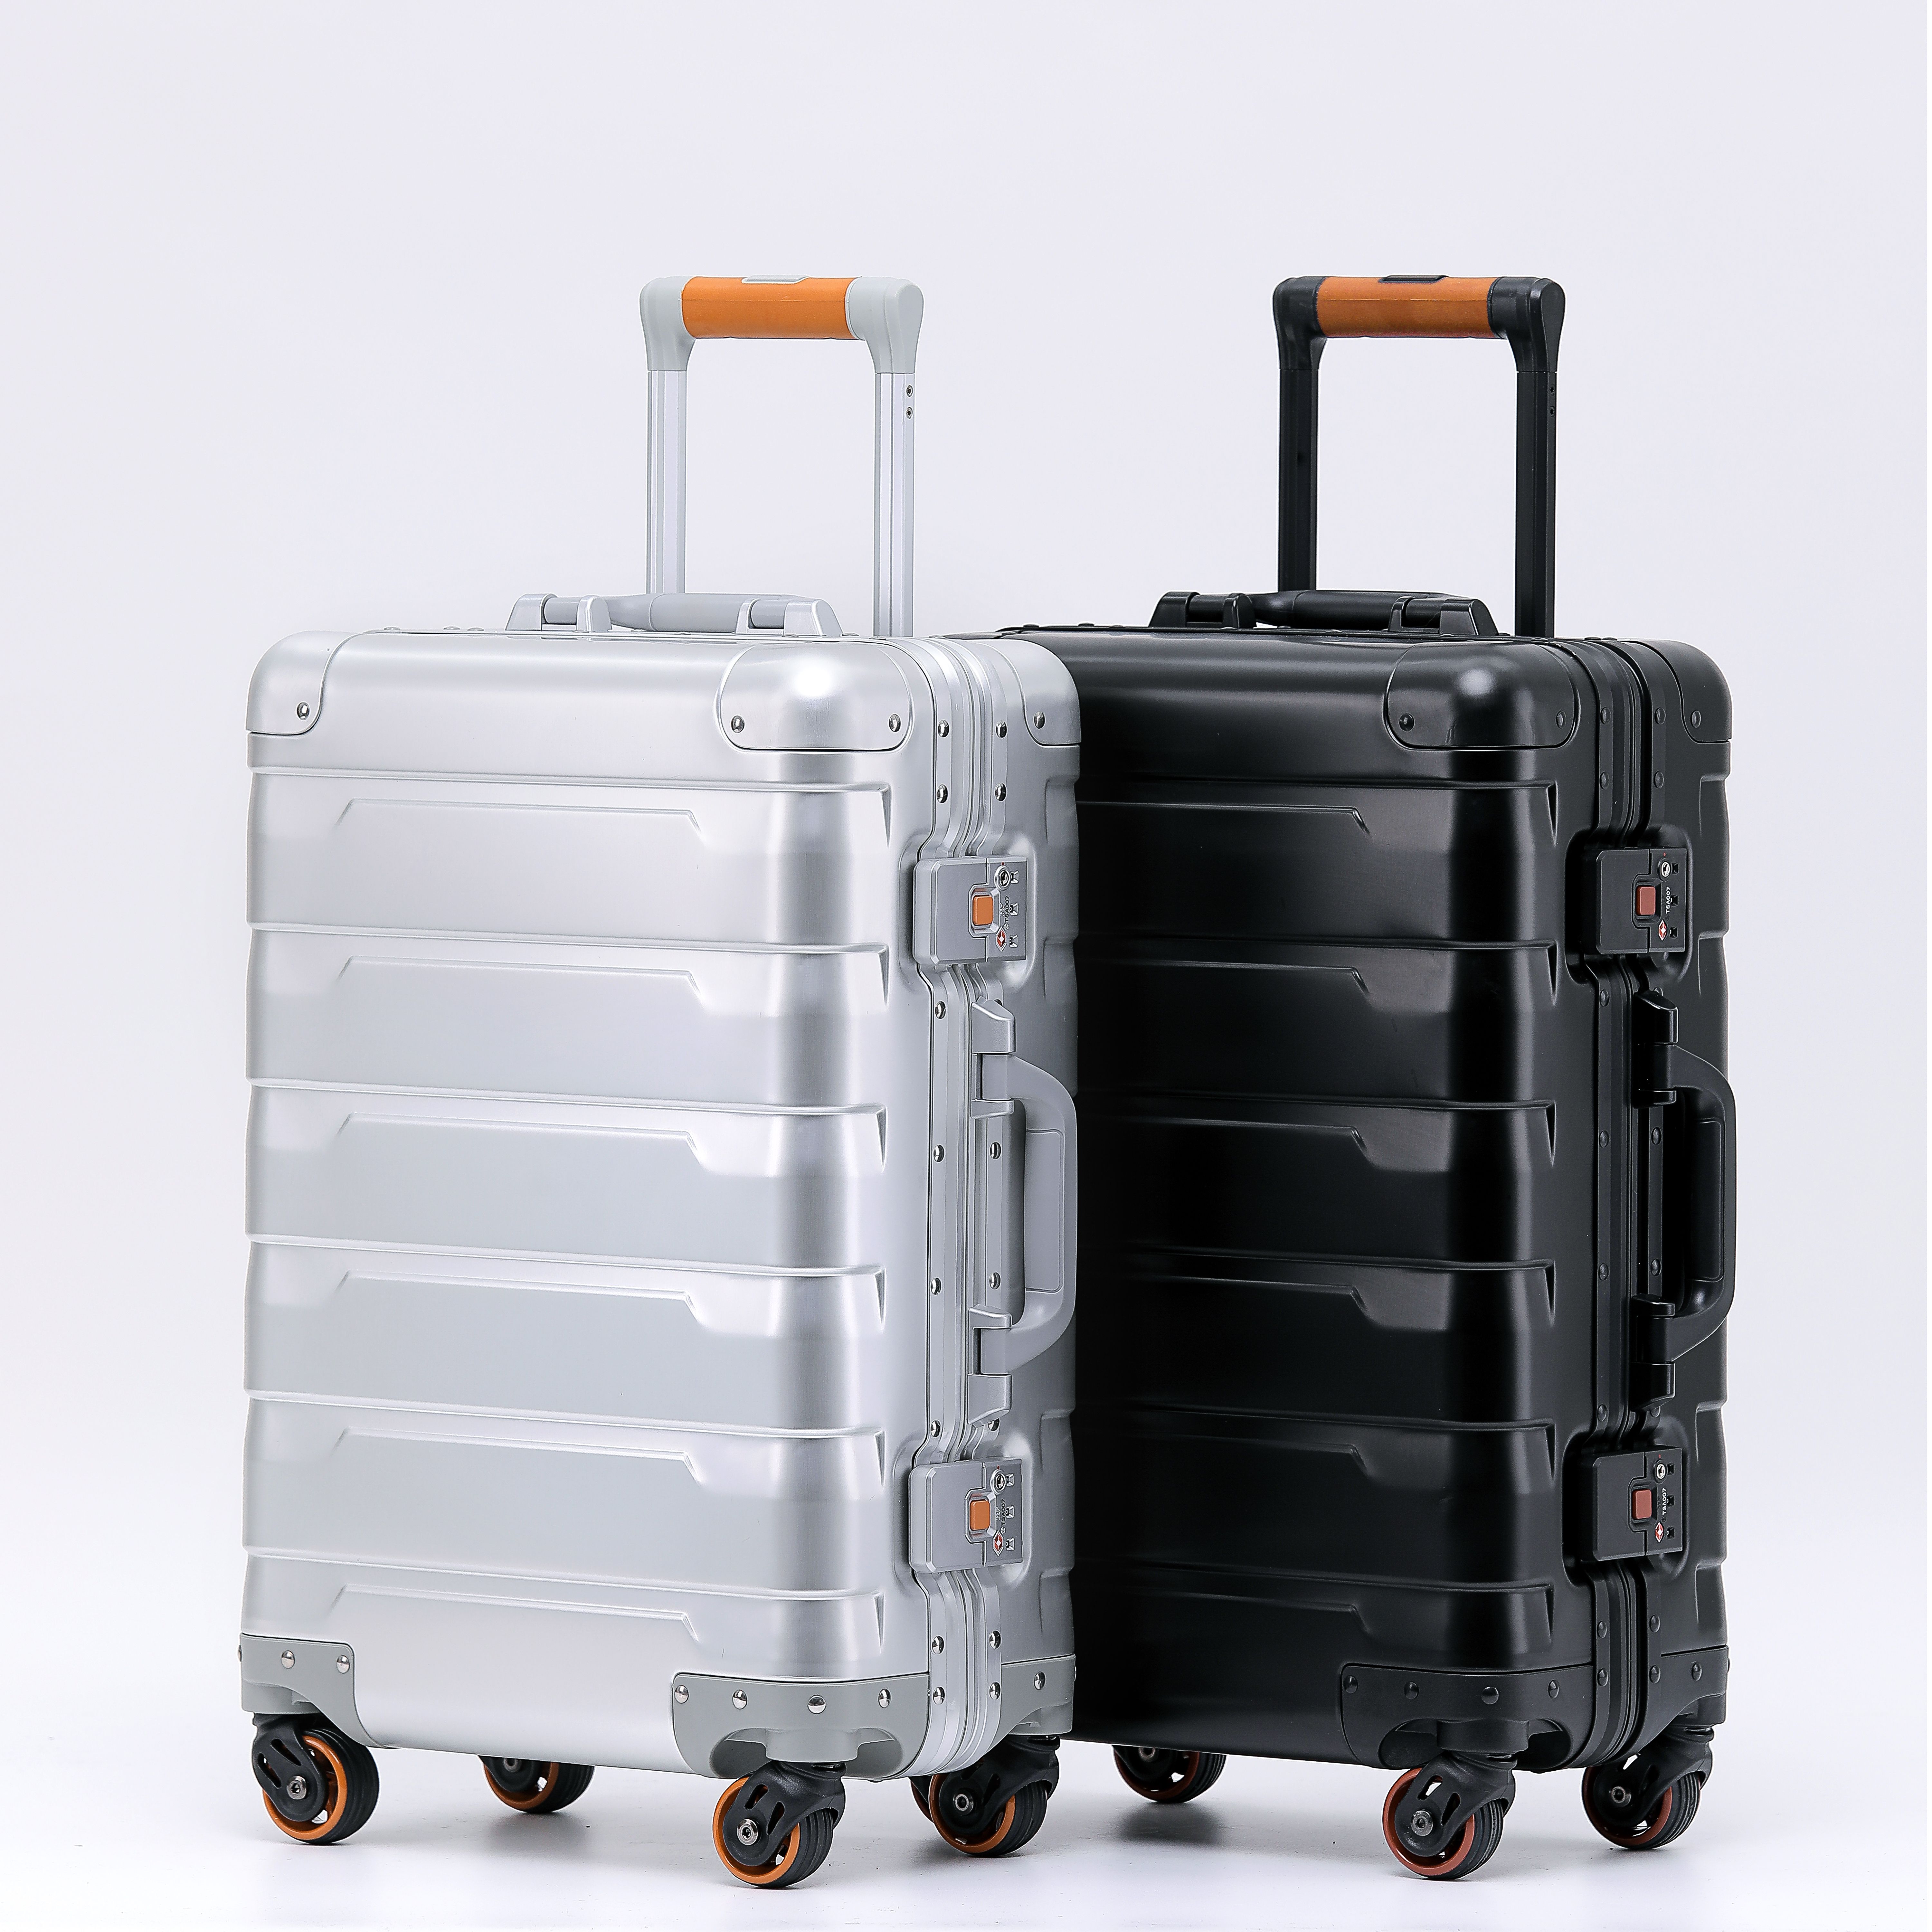 Zhejiang Royal Crafter Luggage Bag Co.,Ltd